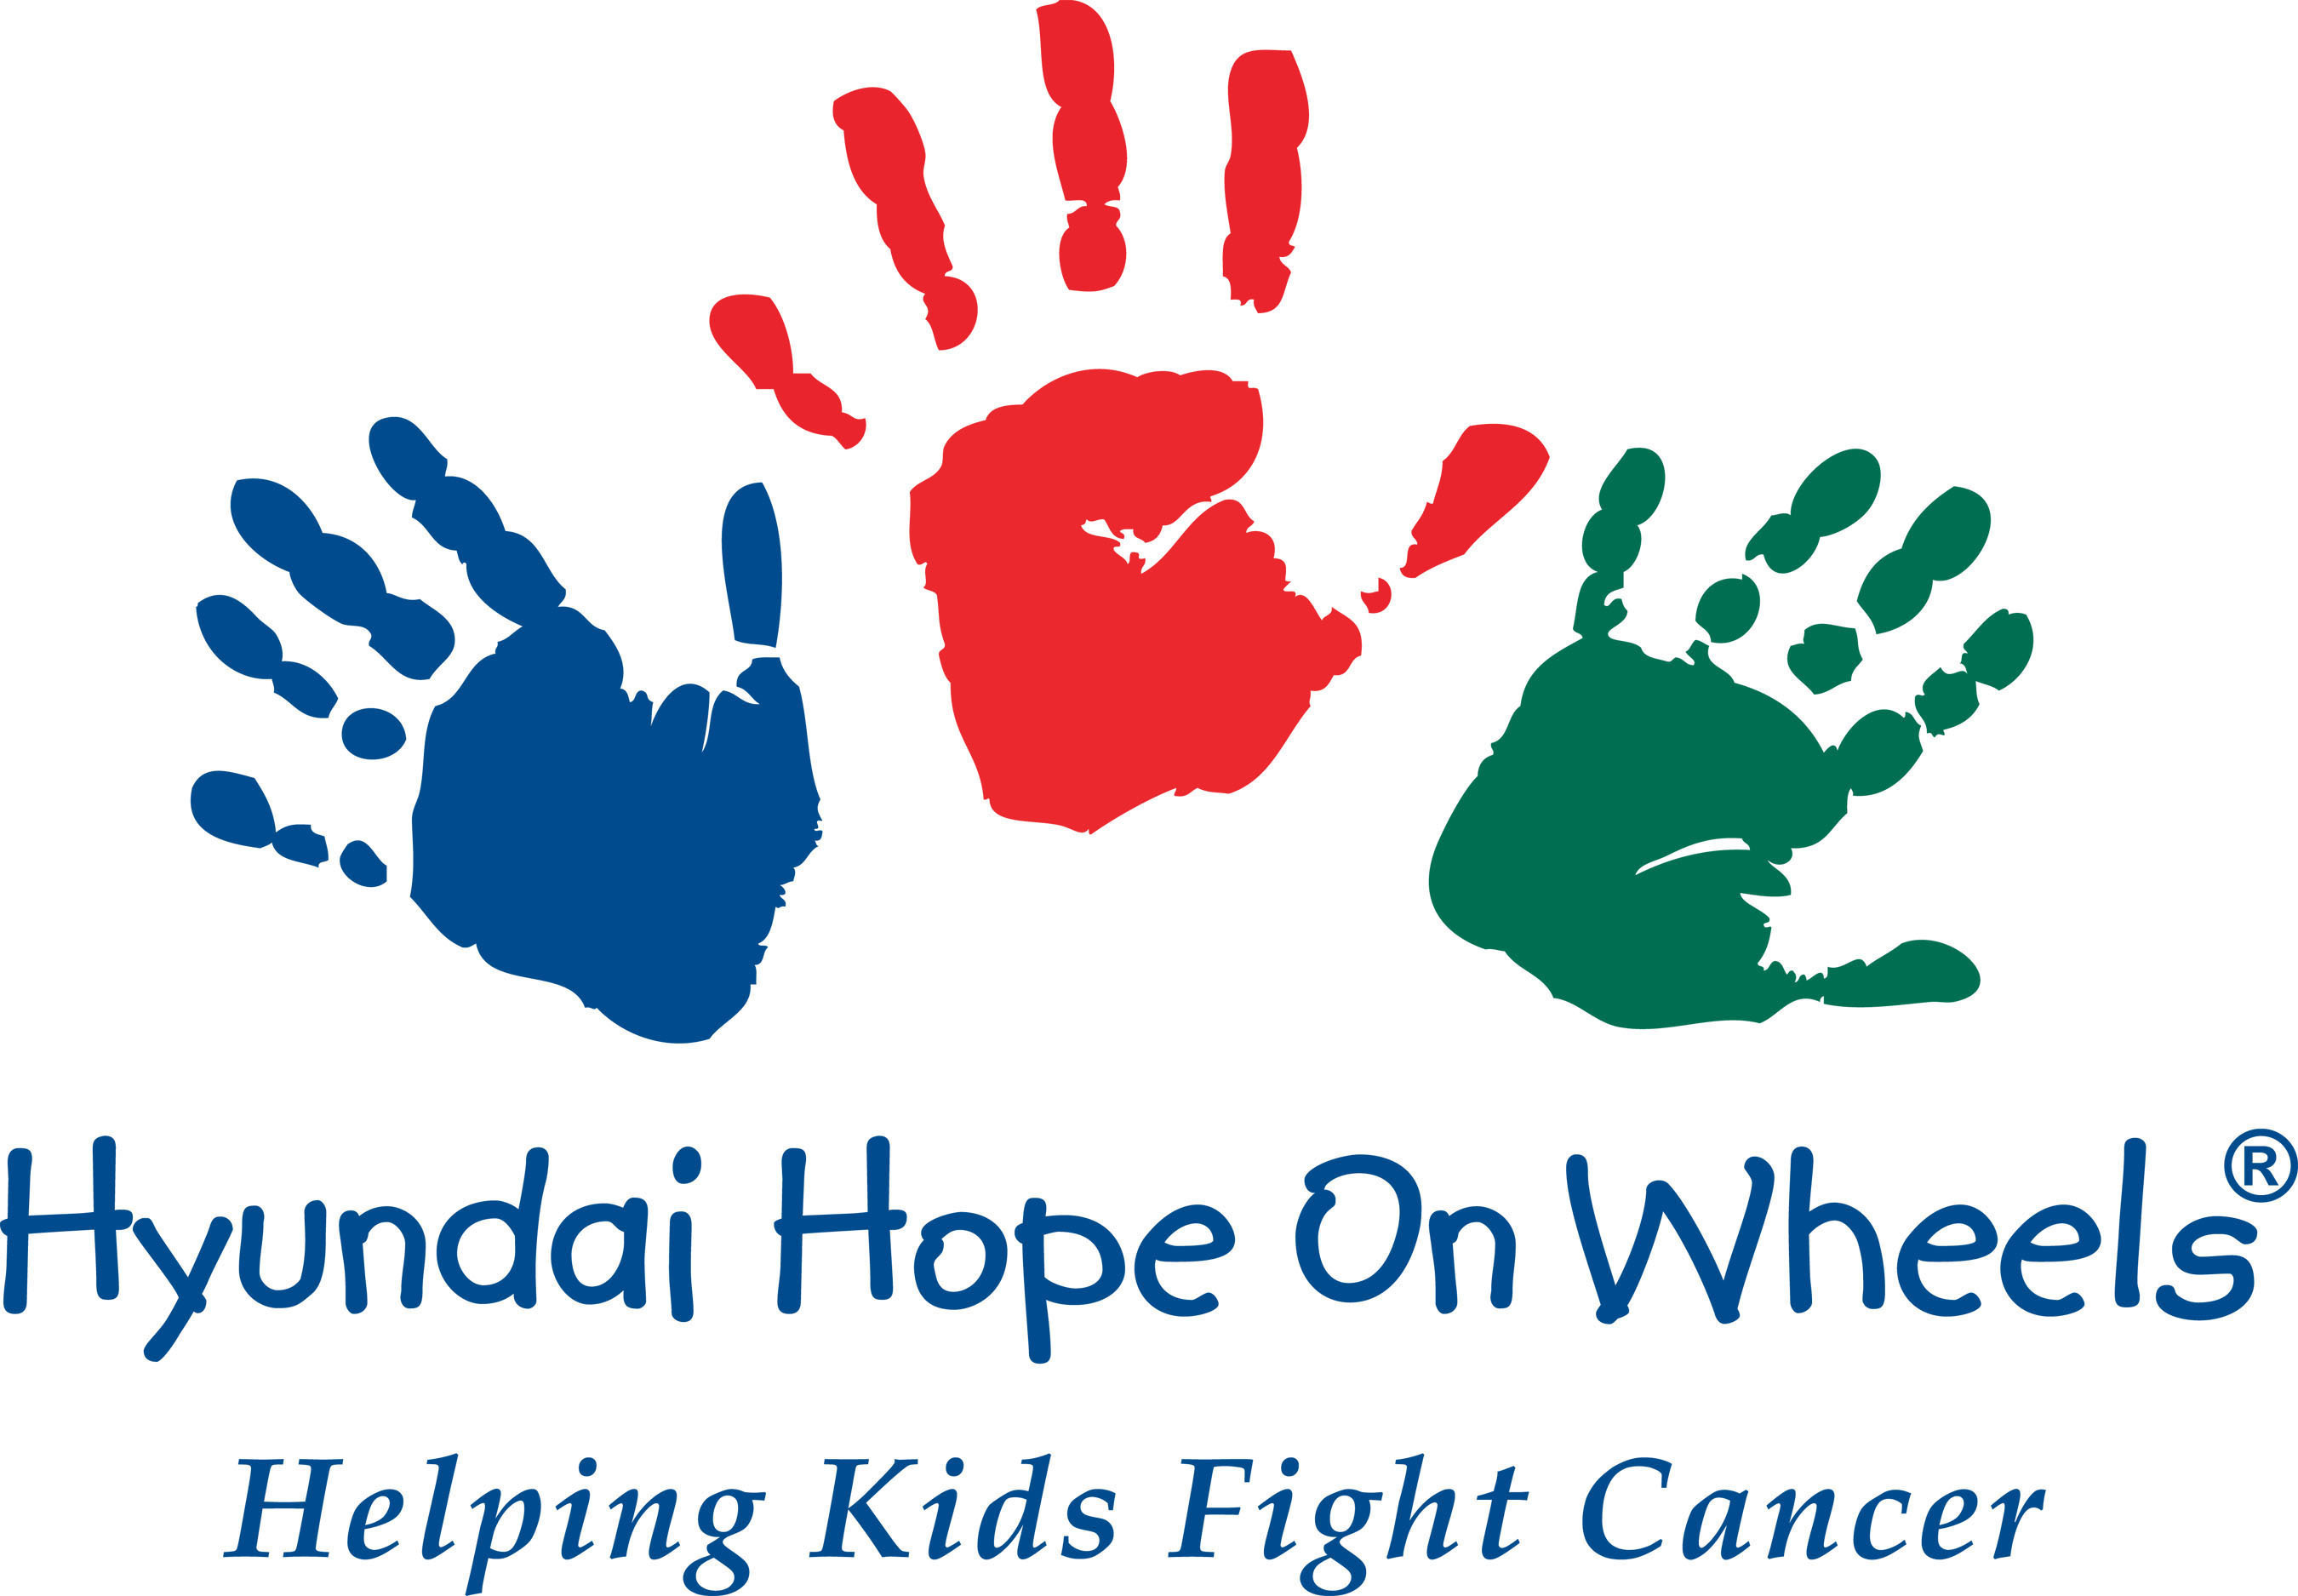 Hyundai Hope On Wheels(R) Logo. (PRNewsFoto/Hyundai Hope On Wheels) (PRNewsFoto/HYUNDAI HOPE ON WHEELS)